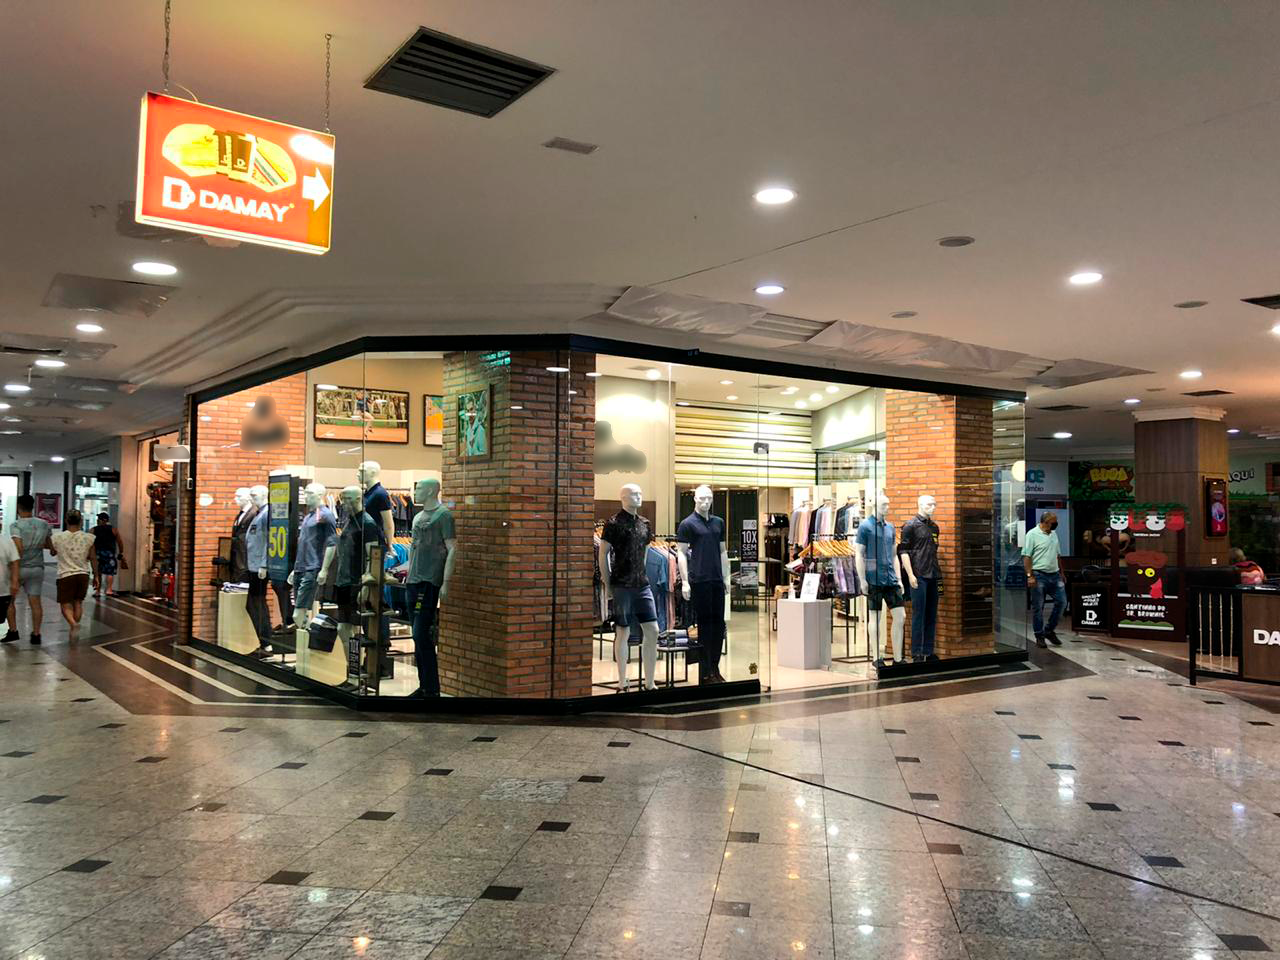 Sala comercial no Atlântico Shopping Center em Balneário Camboriú-SC